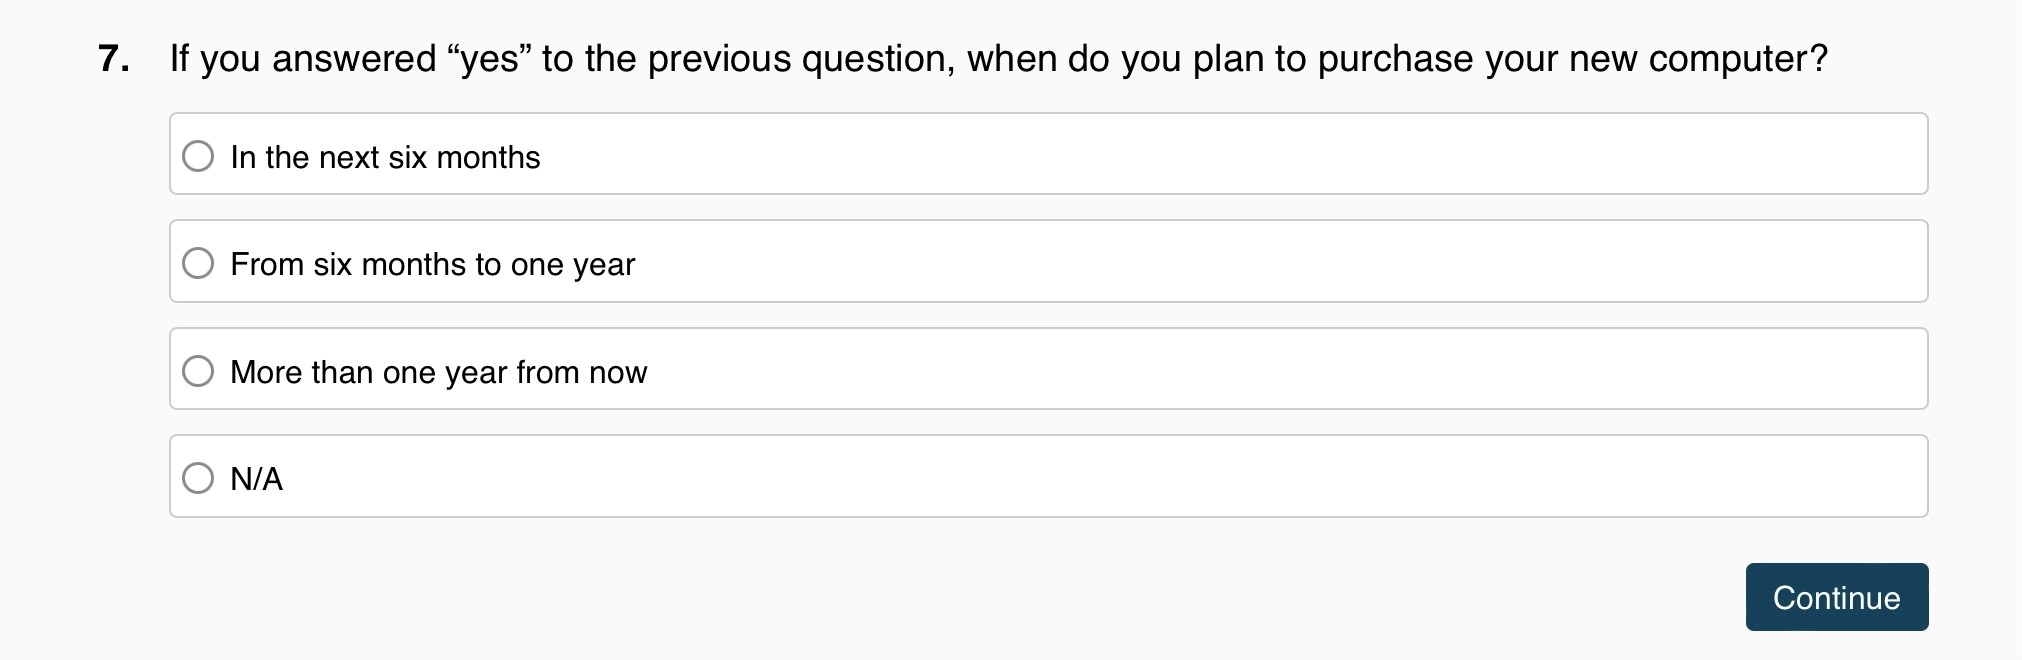 Question that doesn't take advantage of survey logic